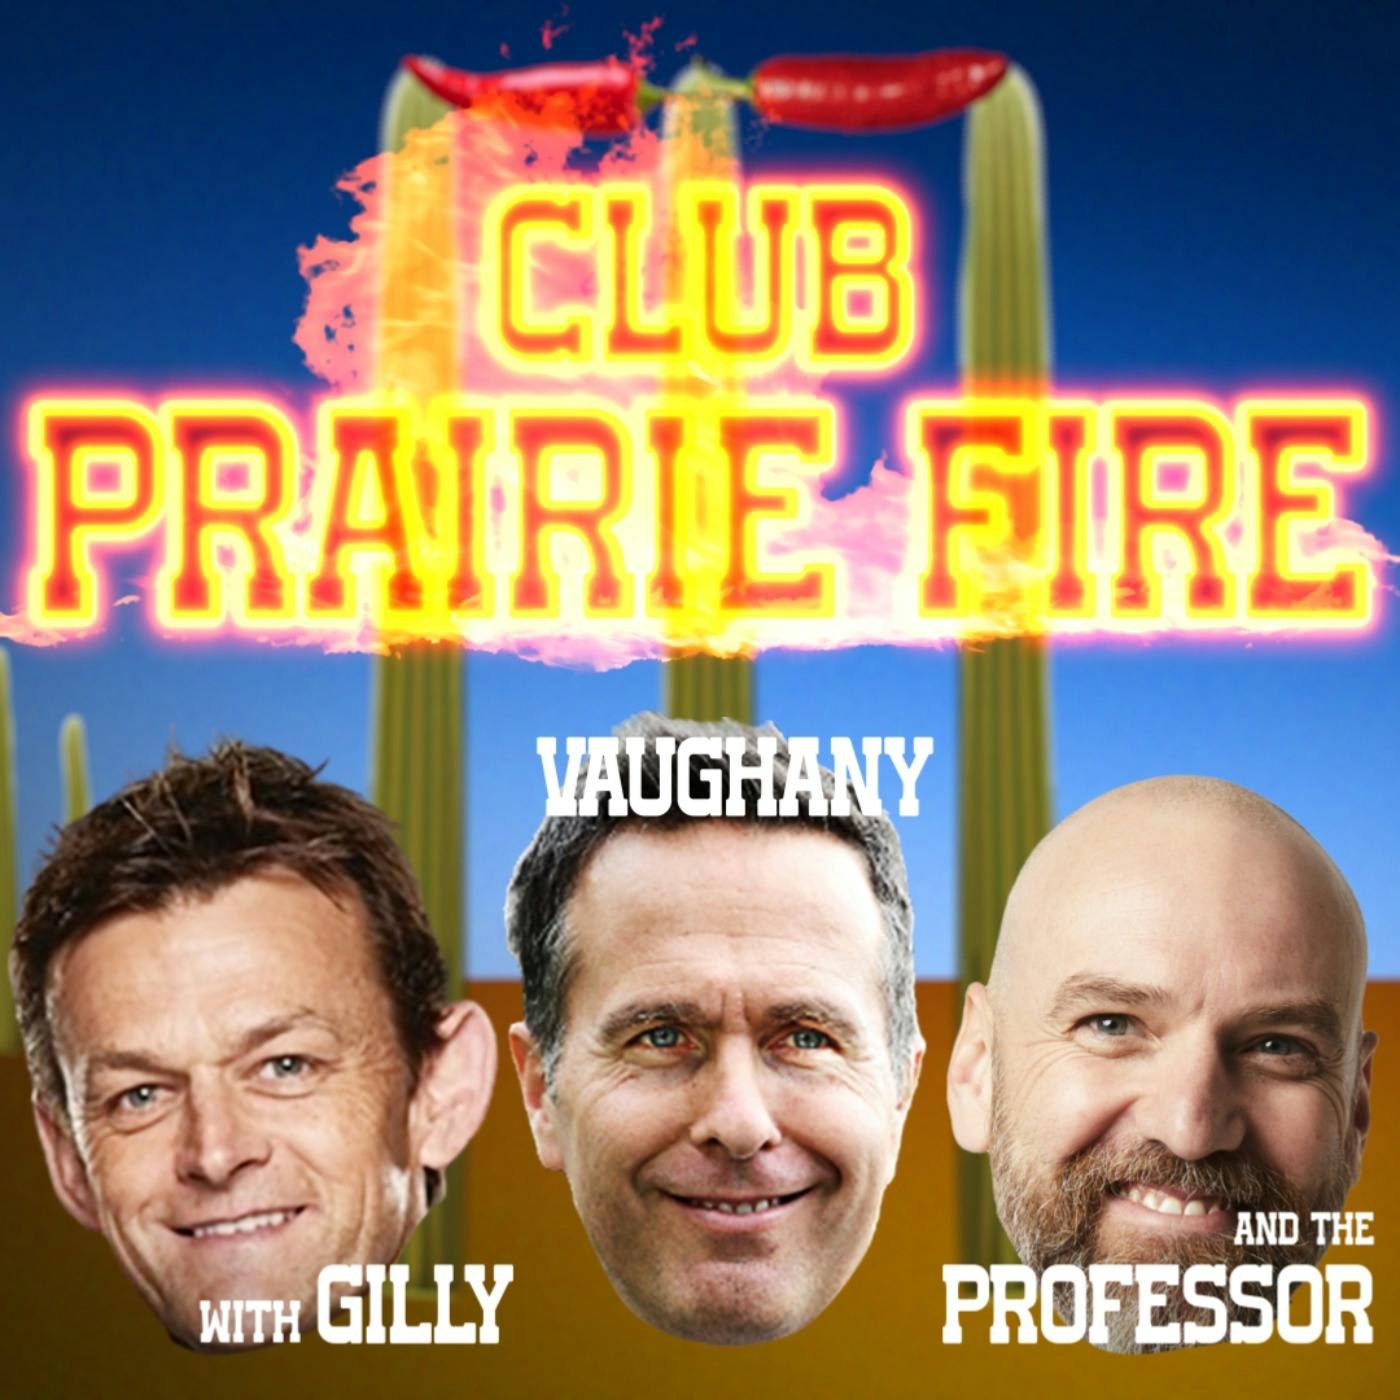 IPL BONANZA episode on Club Prairie Fire